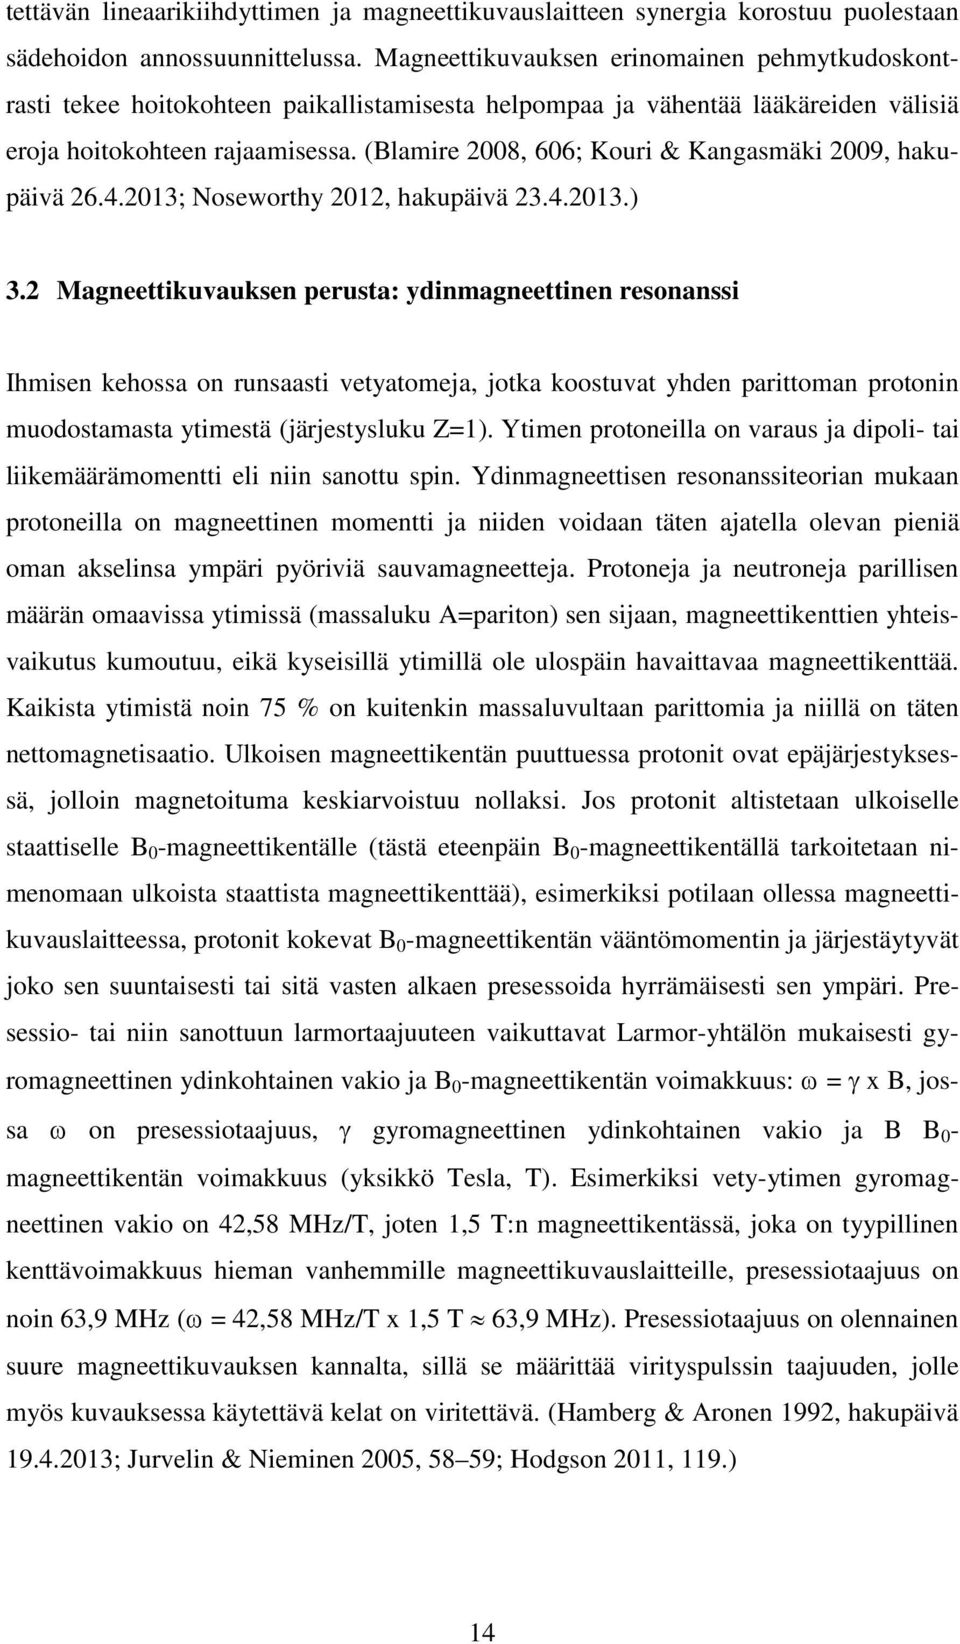 (Blamire 2008, 606; Kouri & Kangasmäki 2009, hakupäivä 26.4.2013; Noseworthy 2012, hakupäivä 23.4.2013.) 3.